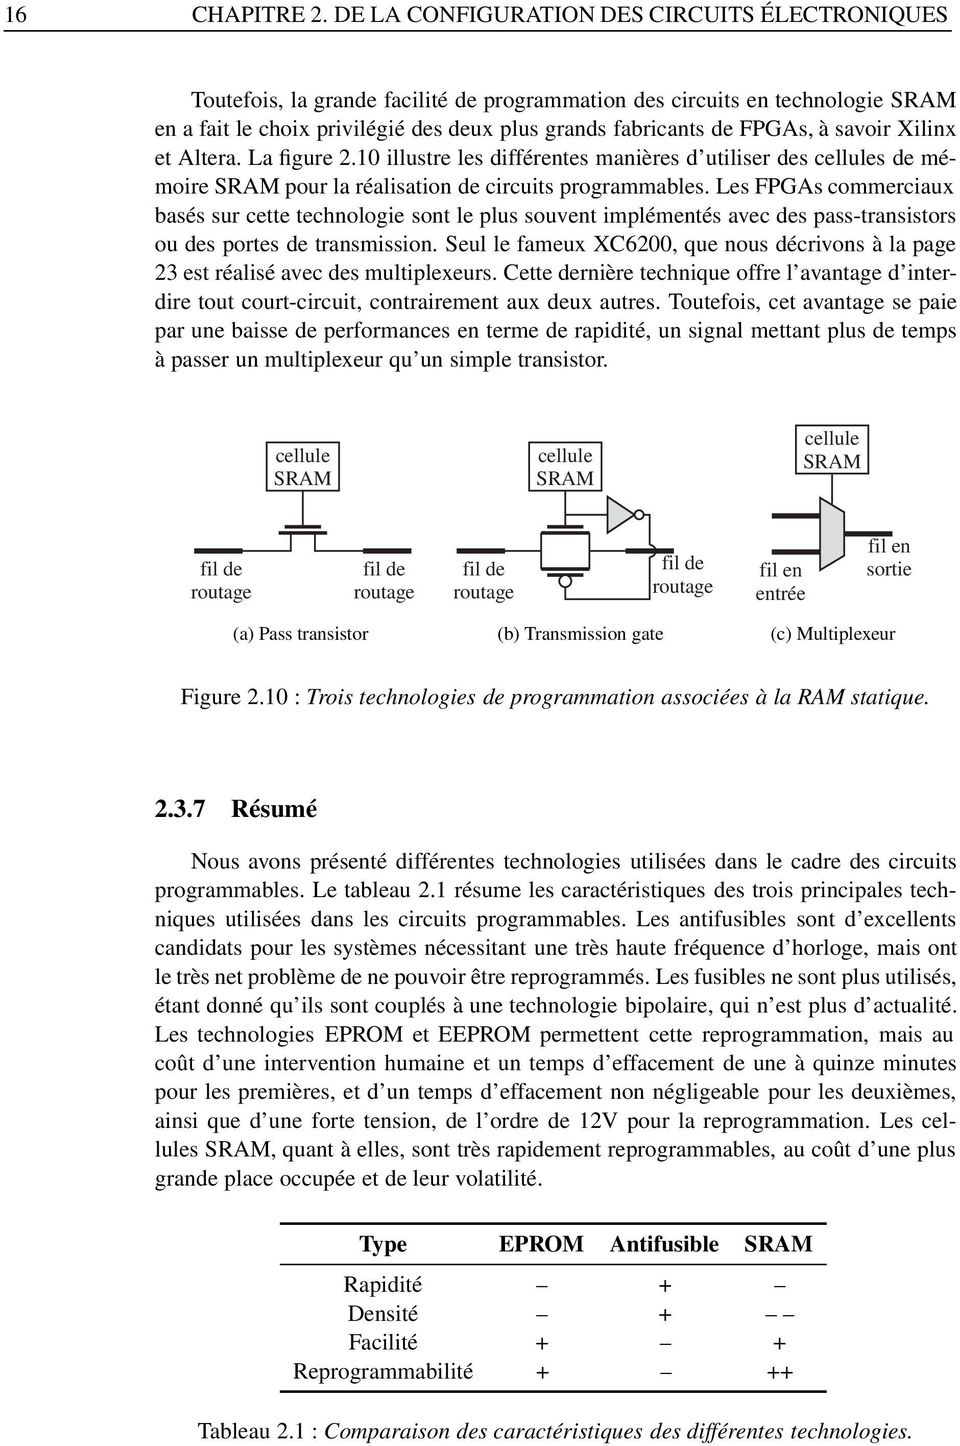 à savoir Xilinx et Altera. La figure 2.10 illustre les différentes manières d utiliser des cellules de mémoire SRAM pour la réalisation de circuits programmables.